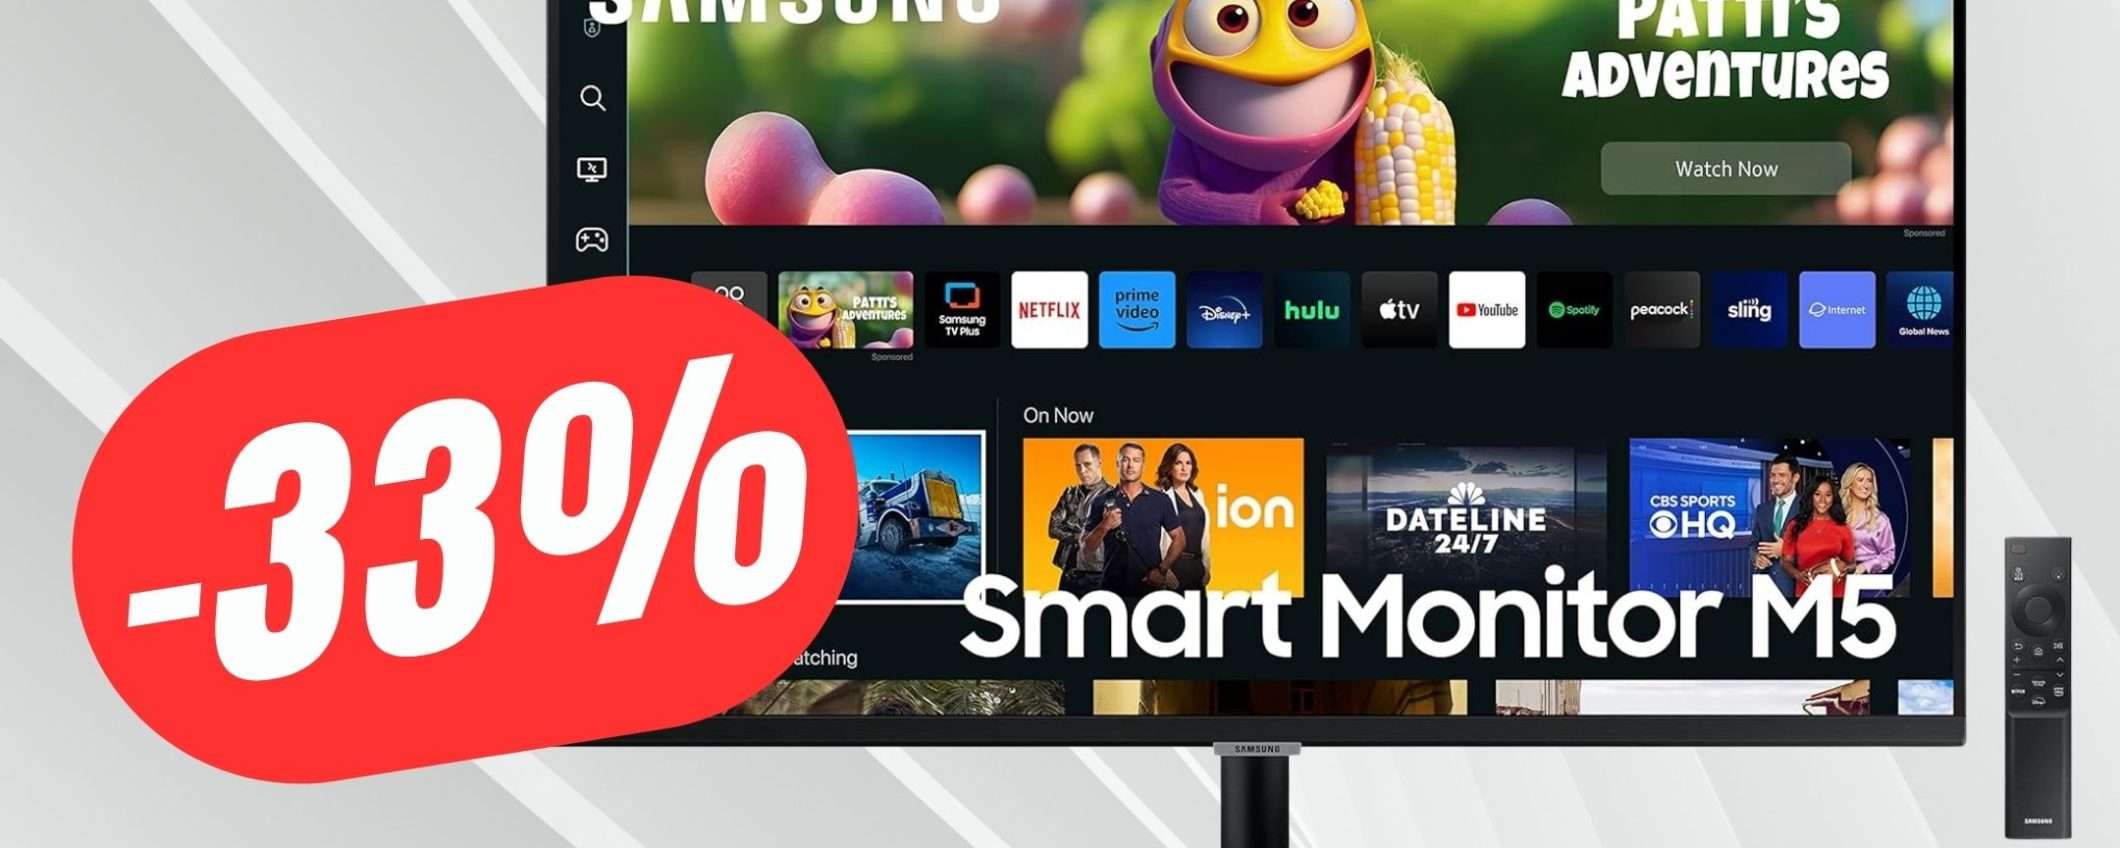 Questo Smart Monitor di Samsung ha Prime Video, Netflix e molto altro!